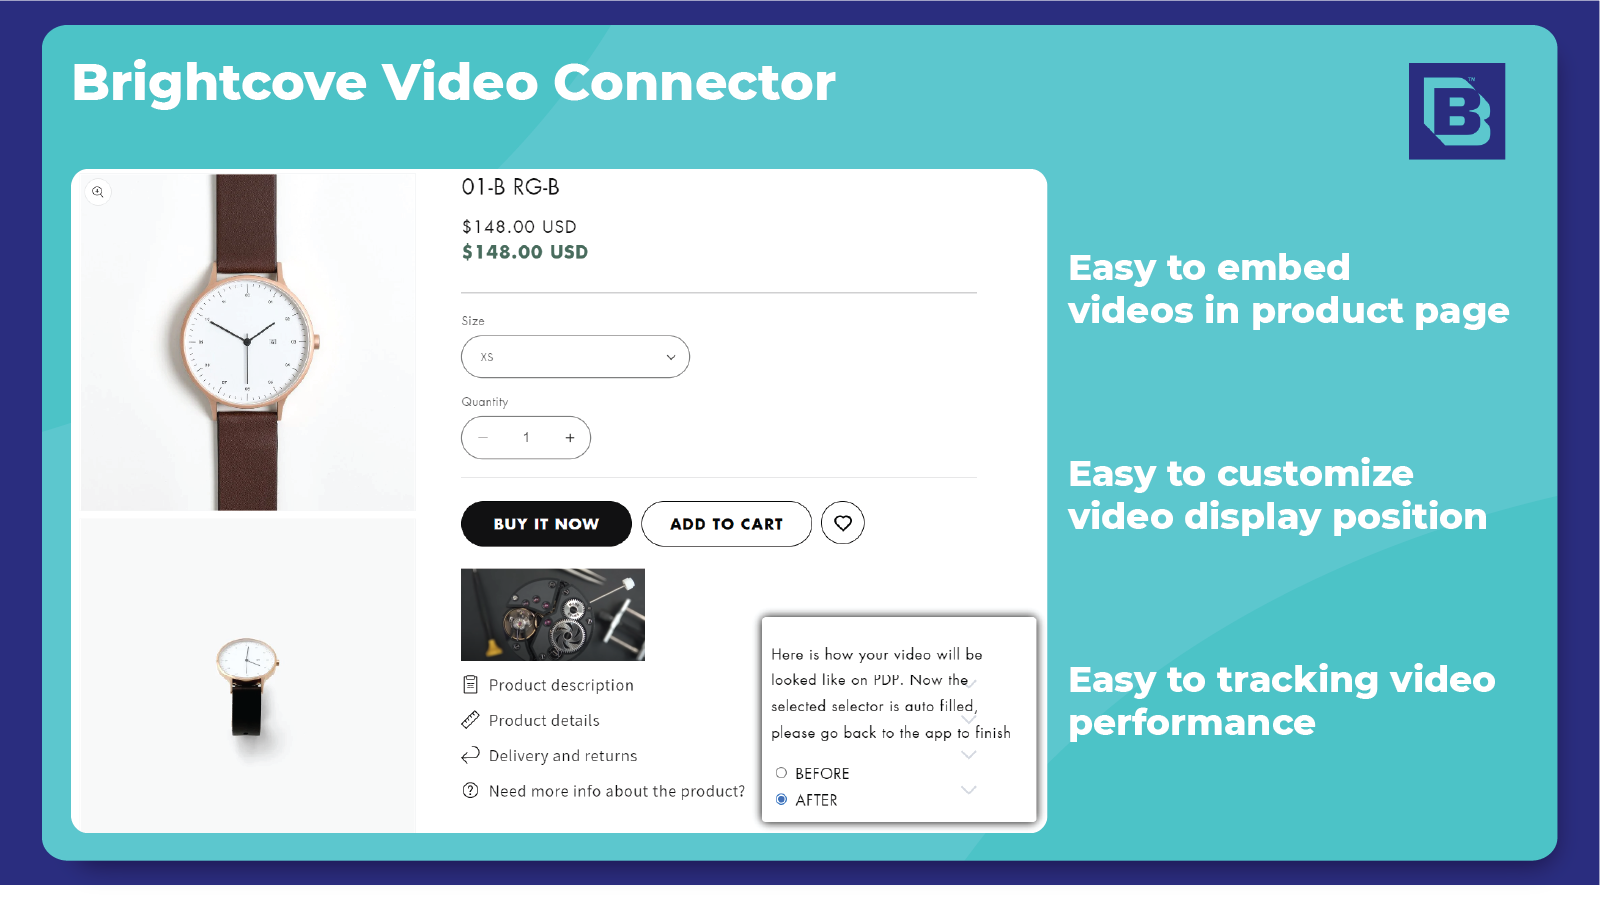 Fácil de incrustar videos y seguimiento del rendimiento del video